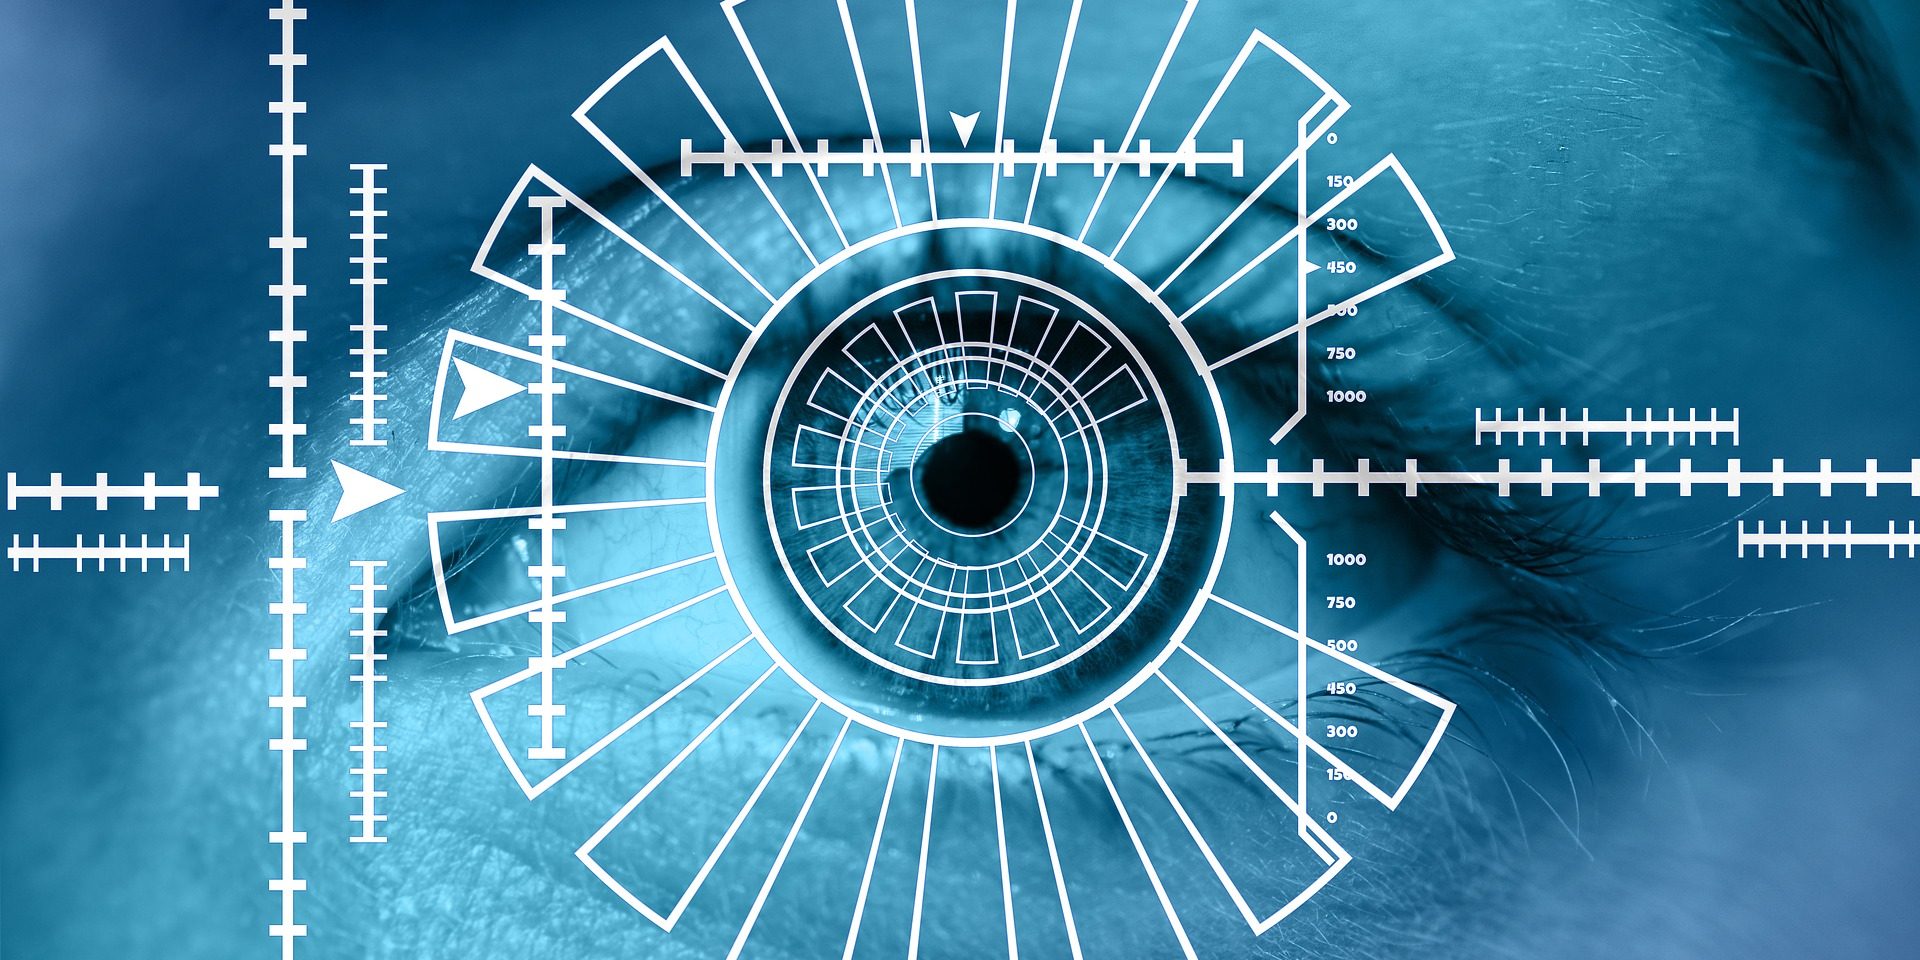 «Перекресток» обслужит клиентов Сбербанка по биометрическим данным